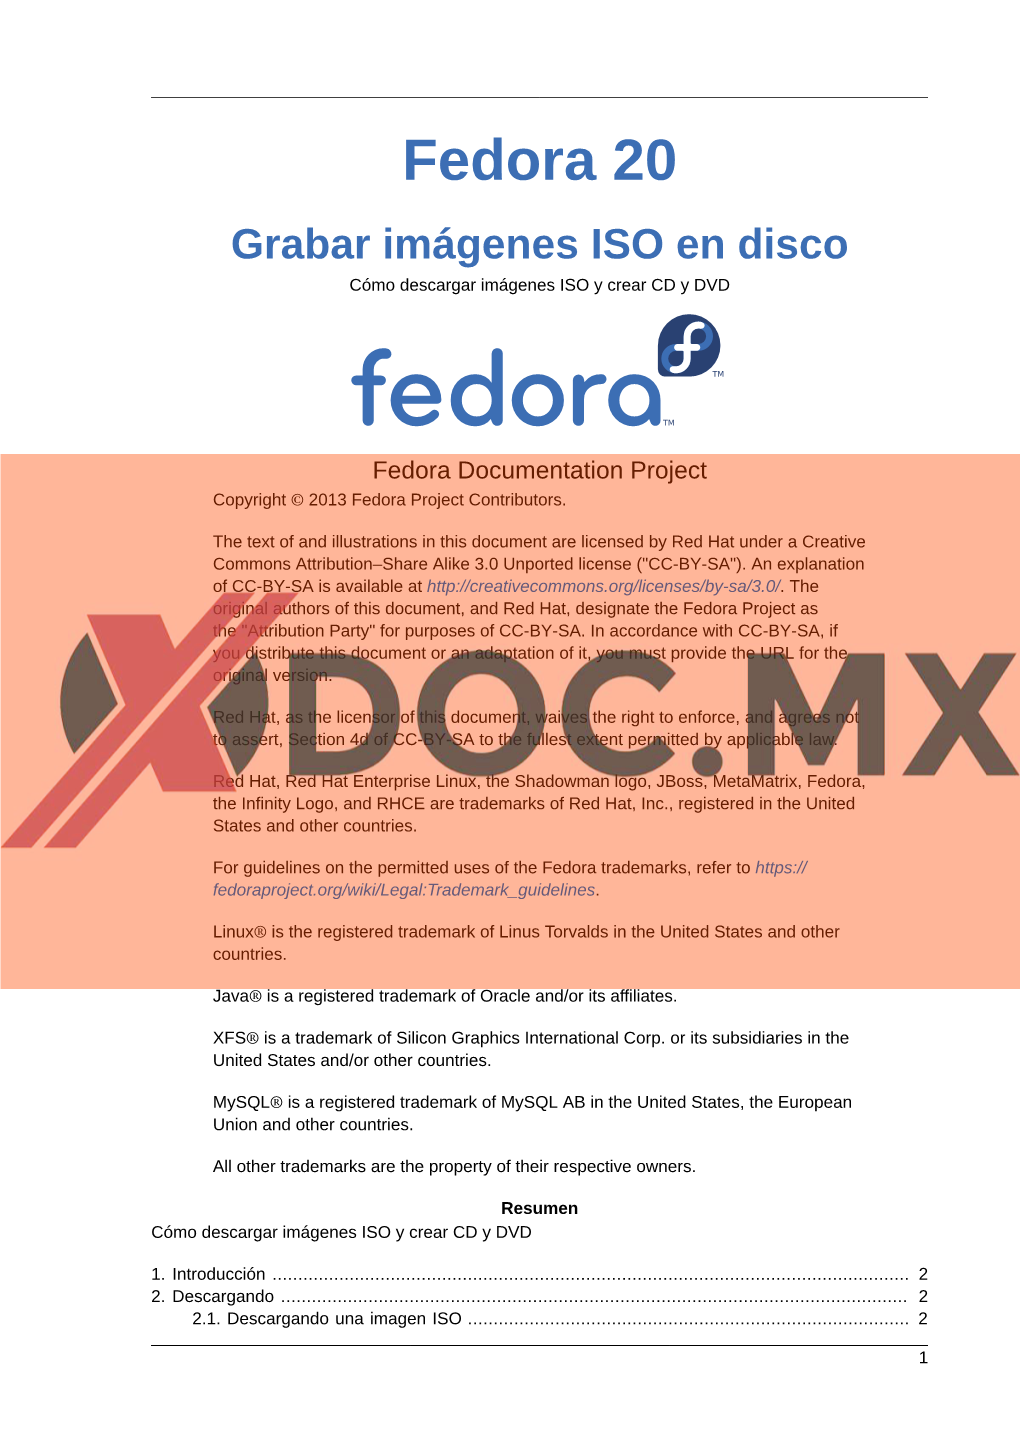 Fedora 20 Grabar Imágenes ISO En Disco Cómo Descargar Imágenes ISO Y Crear CD Y DVD